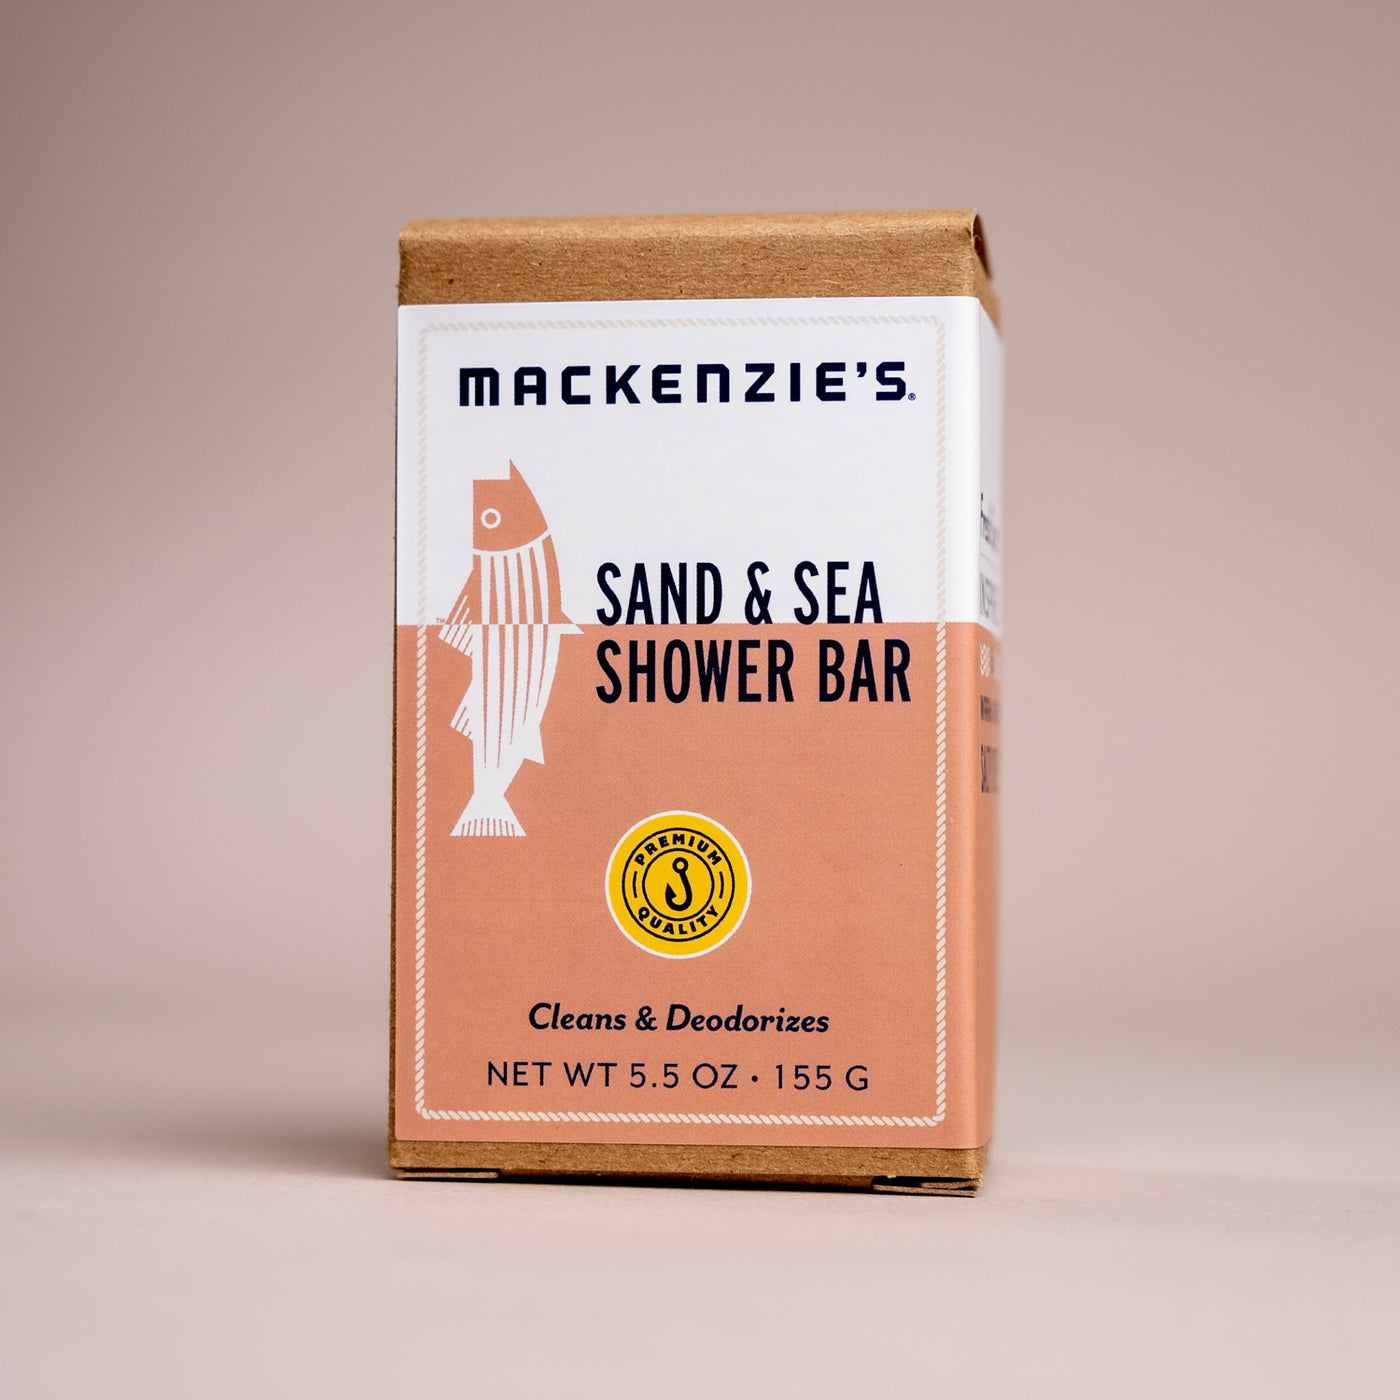 Sand & Sea Shower Bar